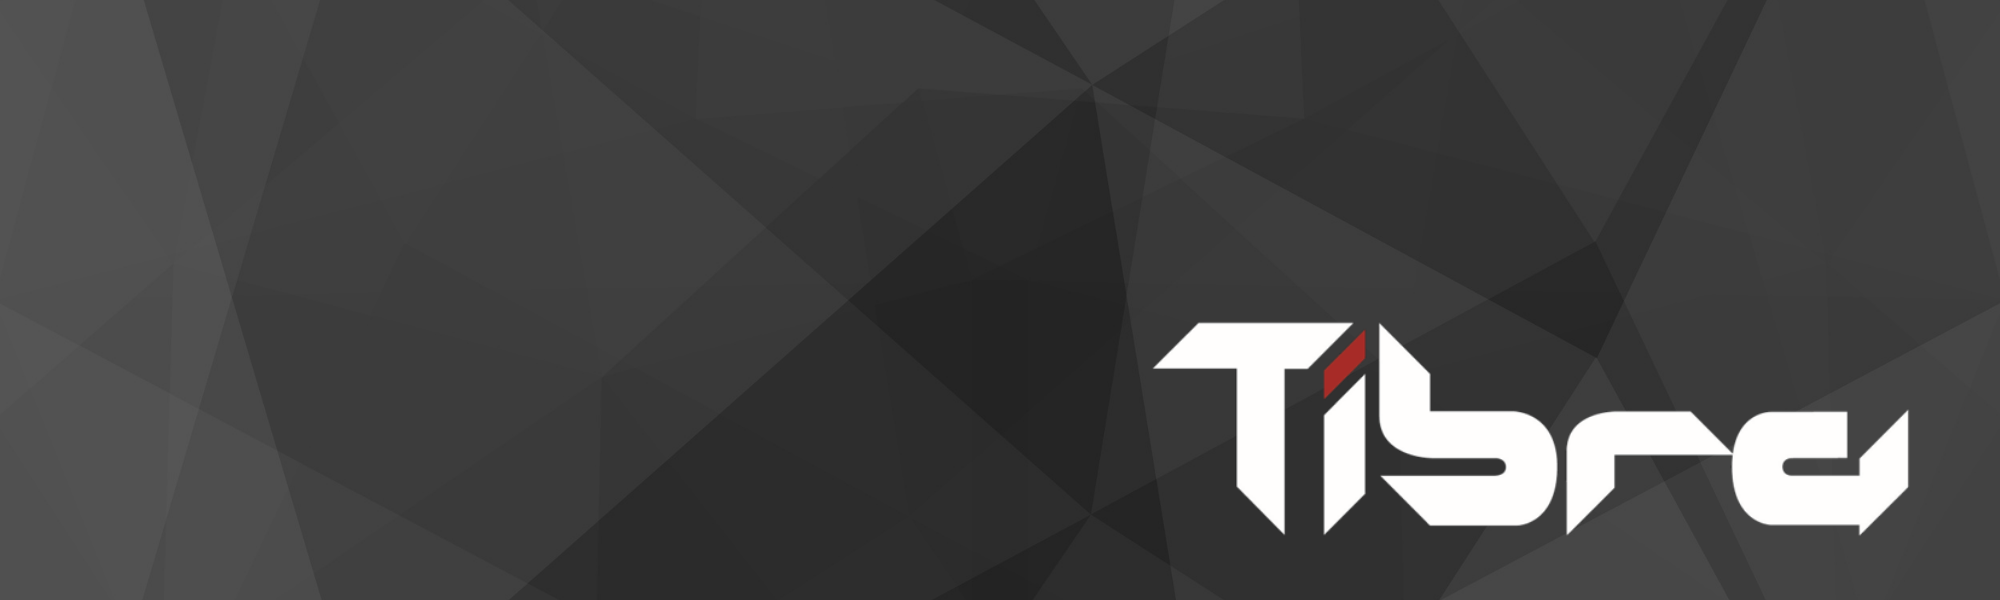 Tibra profile banner profile banner